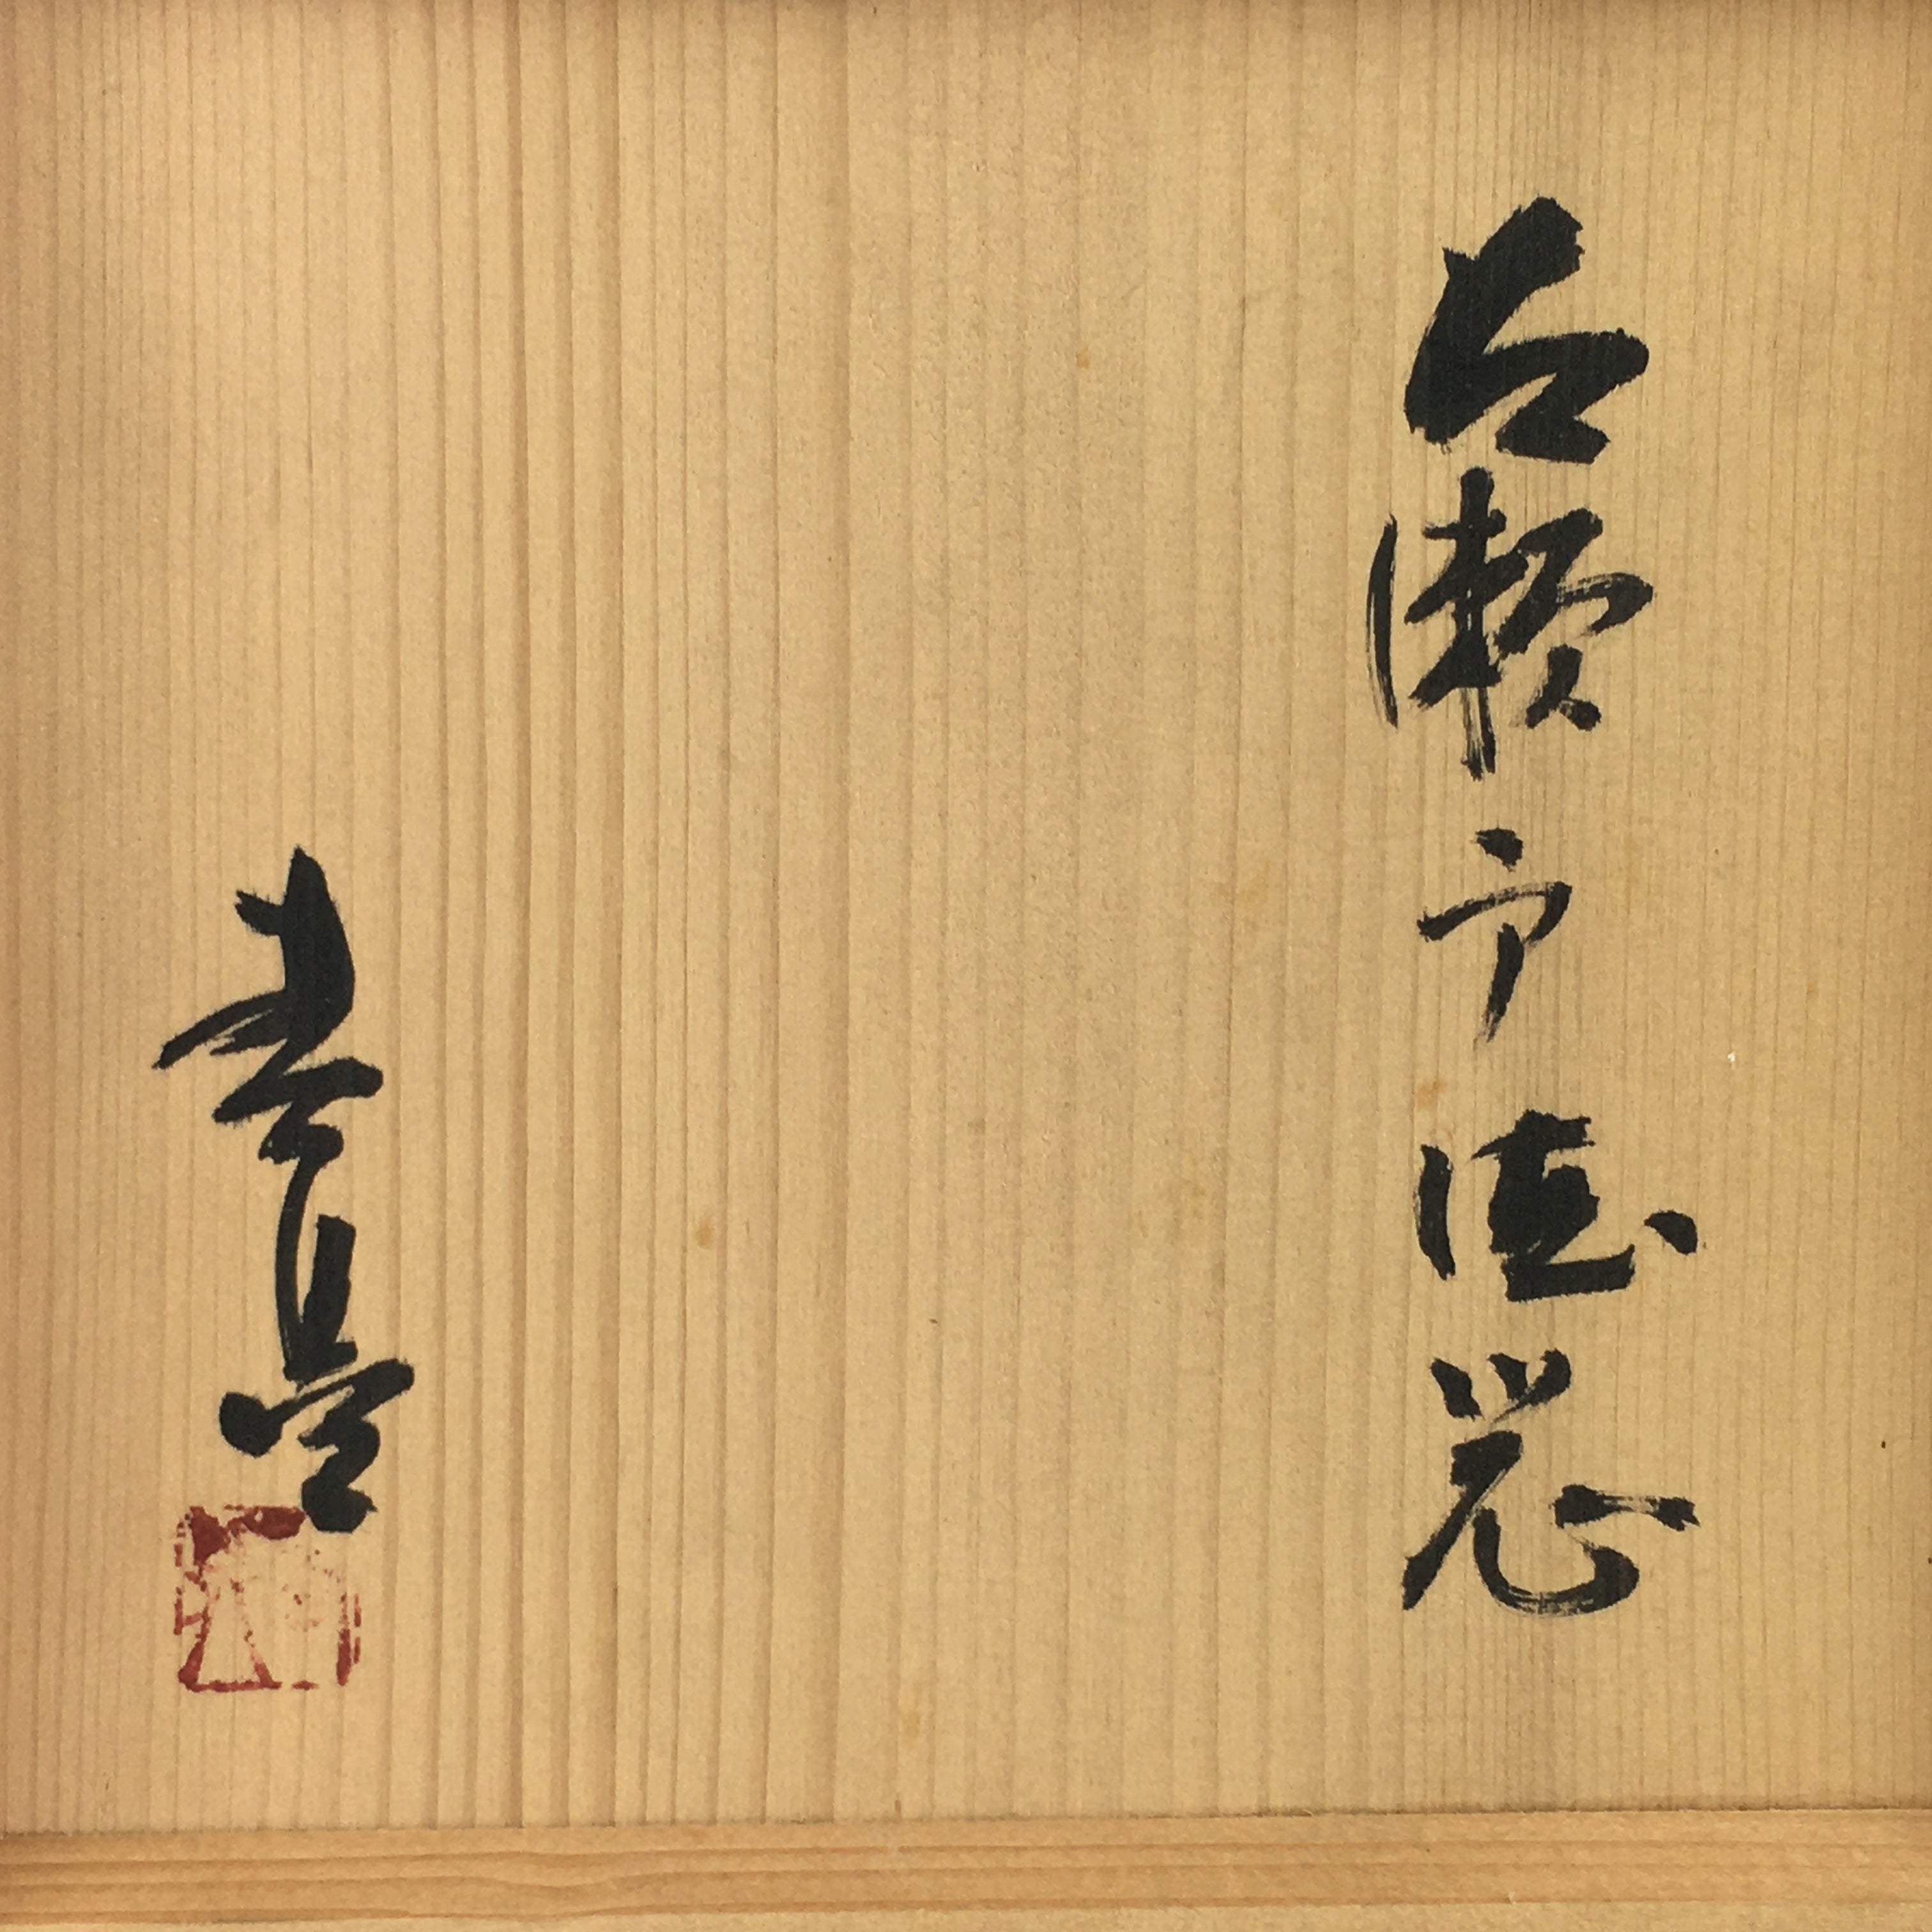 Japanese Wooden Storage Box Vtg Pottery Hako Inside 16.0x10.5x17.0cm WB940